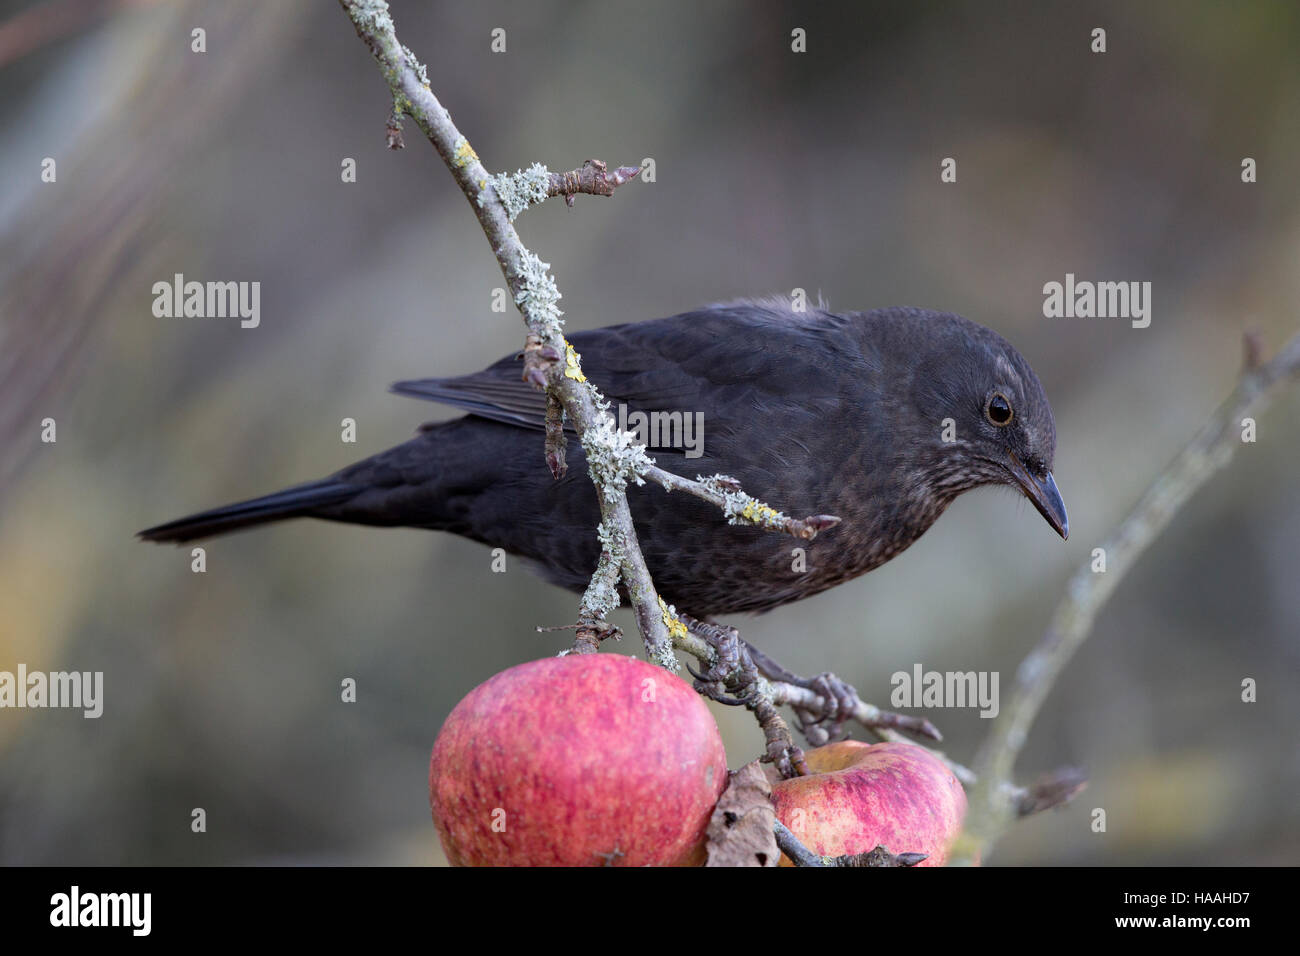 Blackbird (Turdus merula) feeding on an apple tree Stock Photo